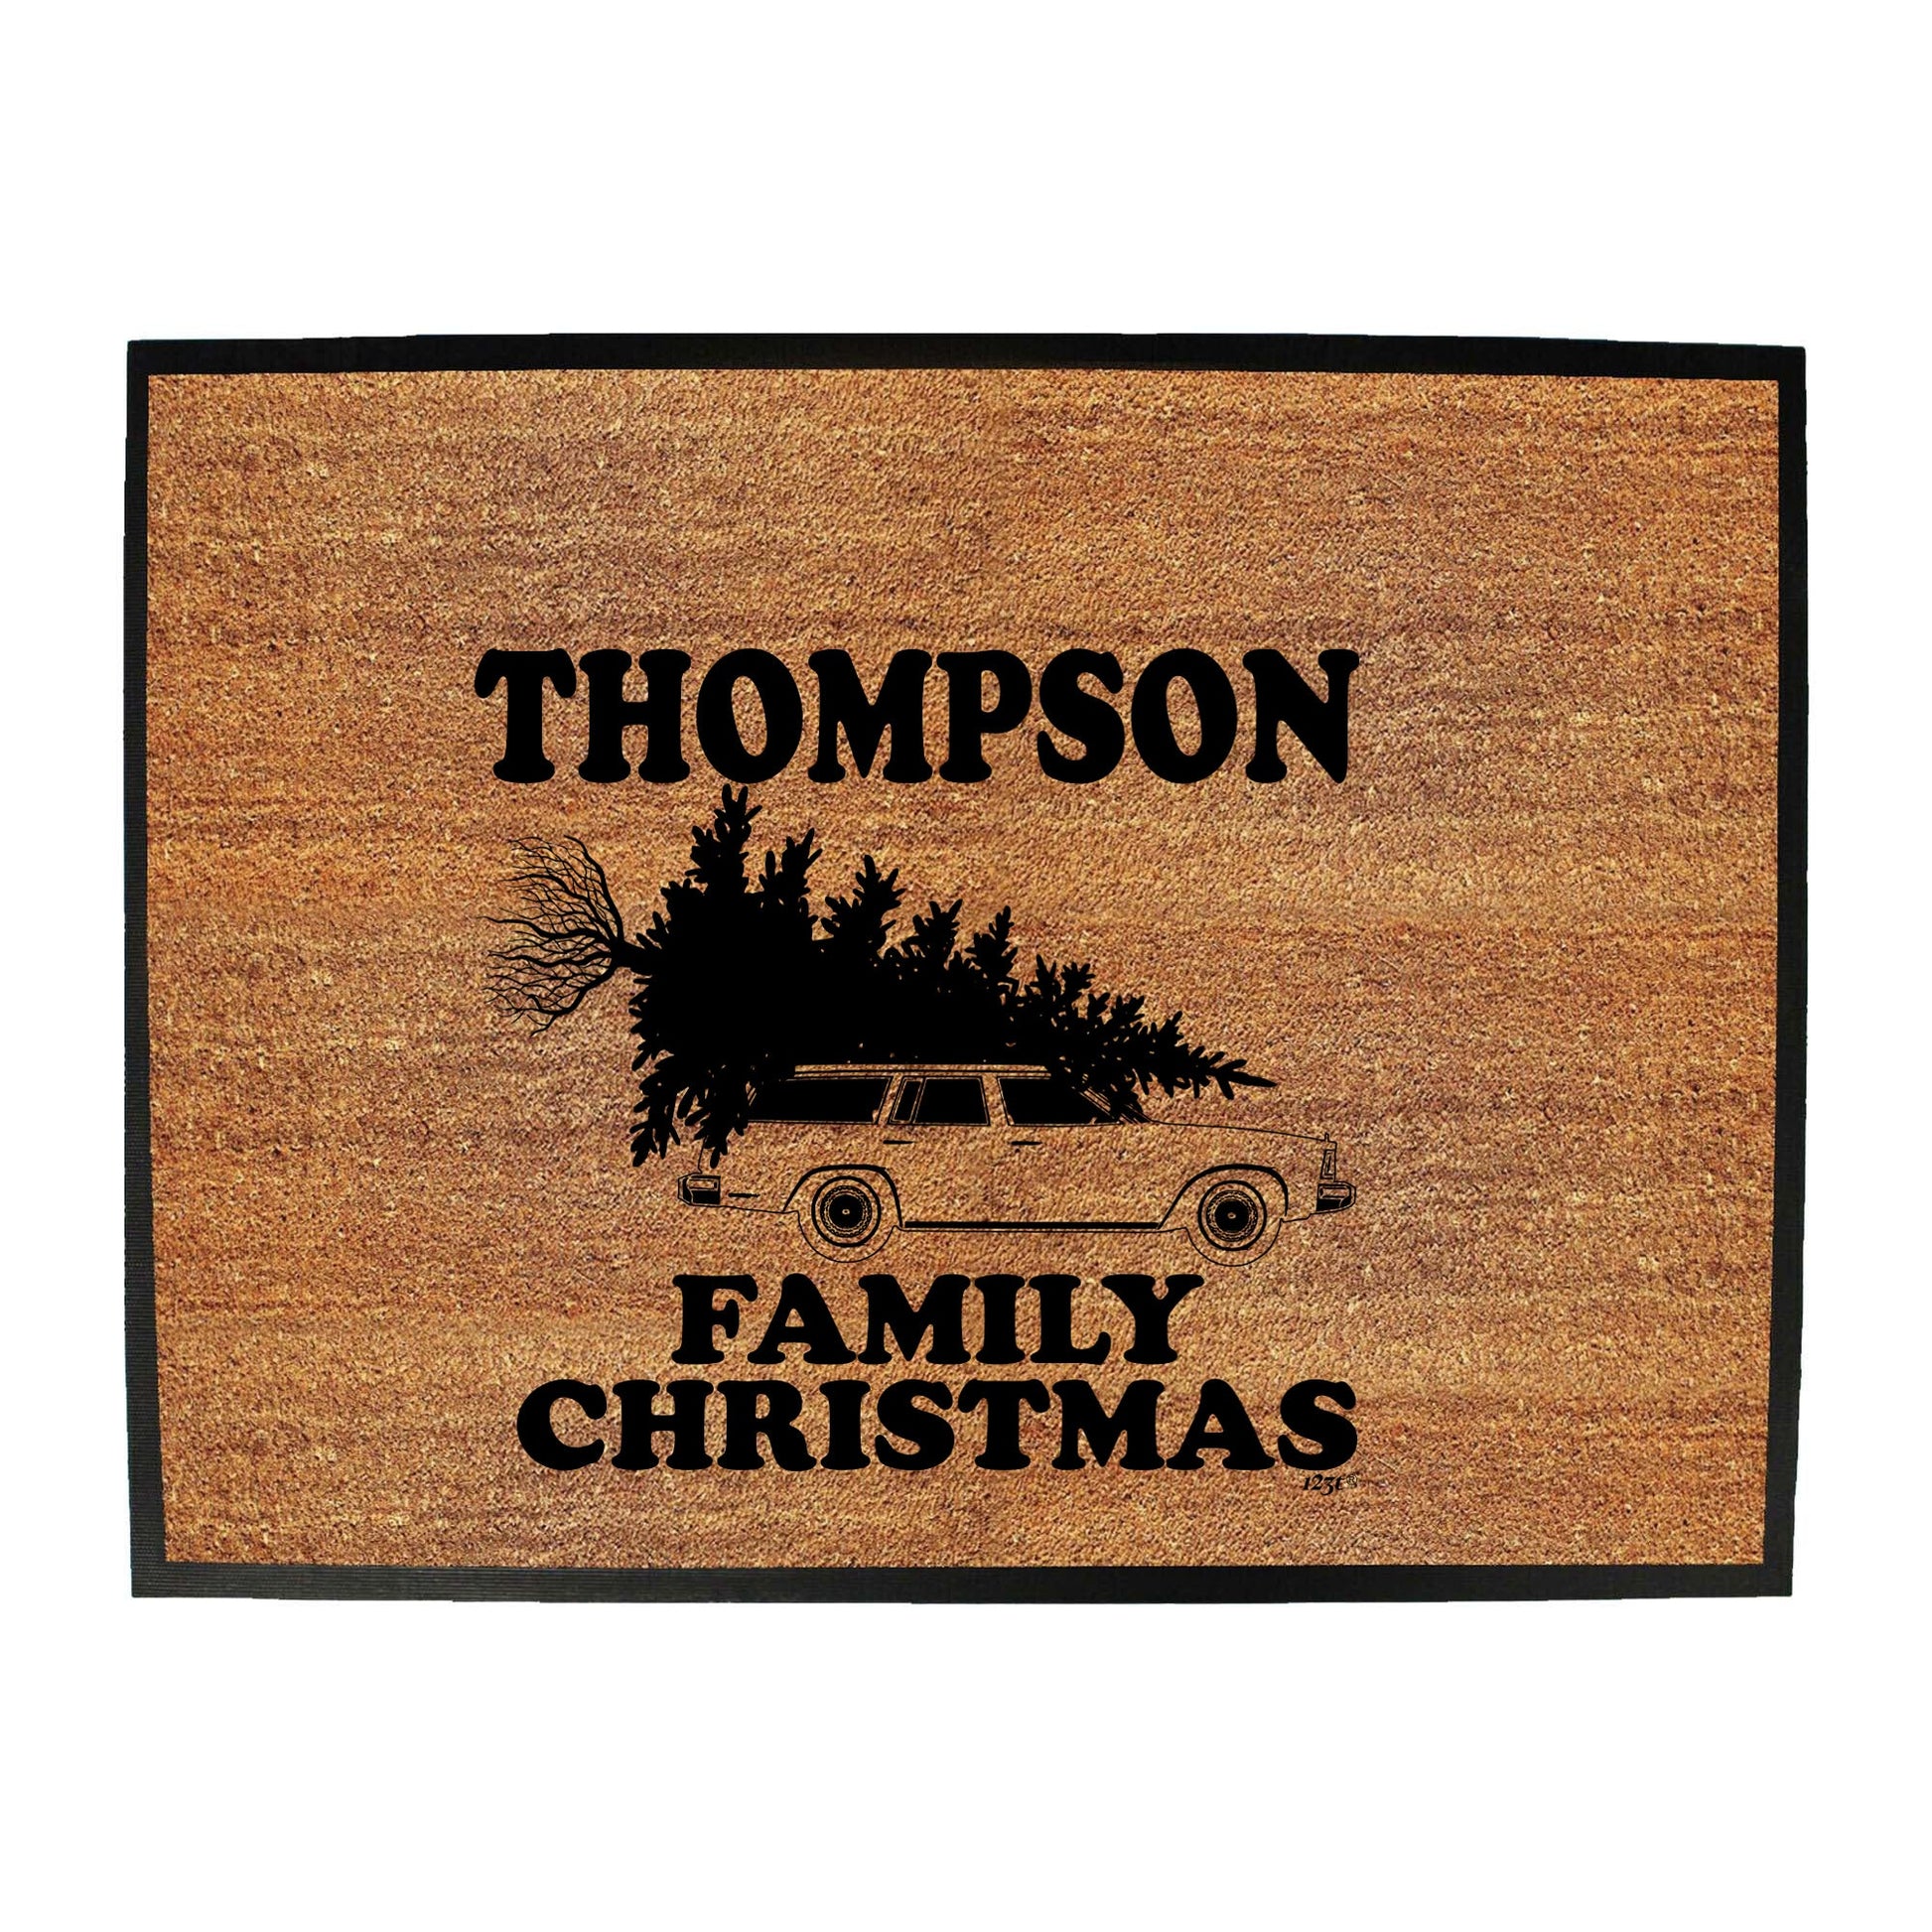 Family Christmas Thompson - Funny Novelty Doormat